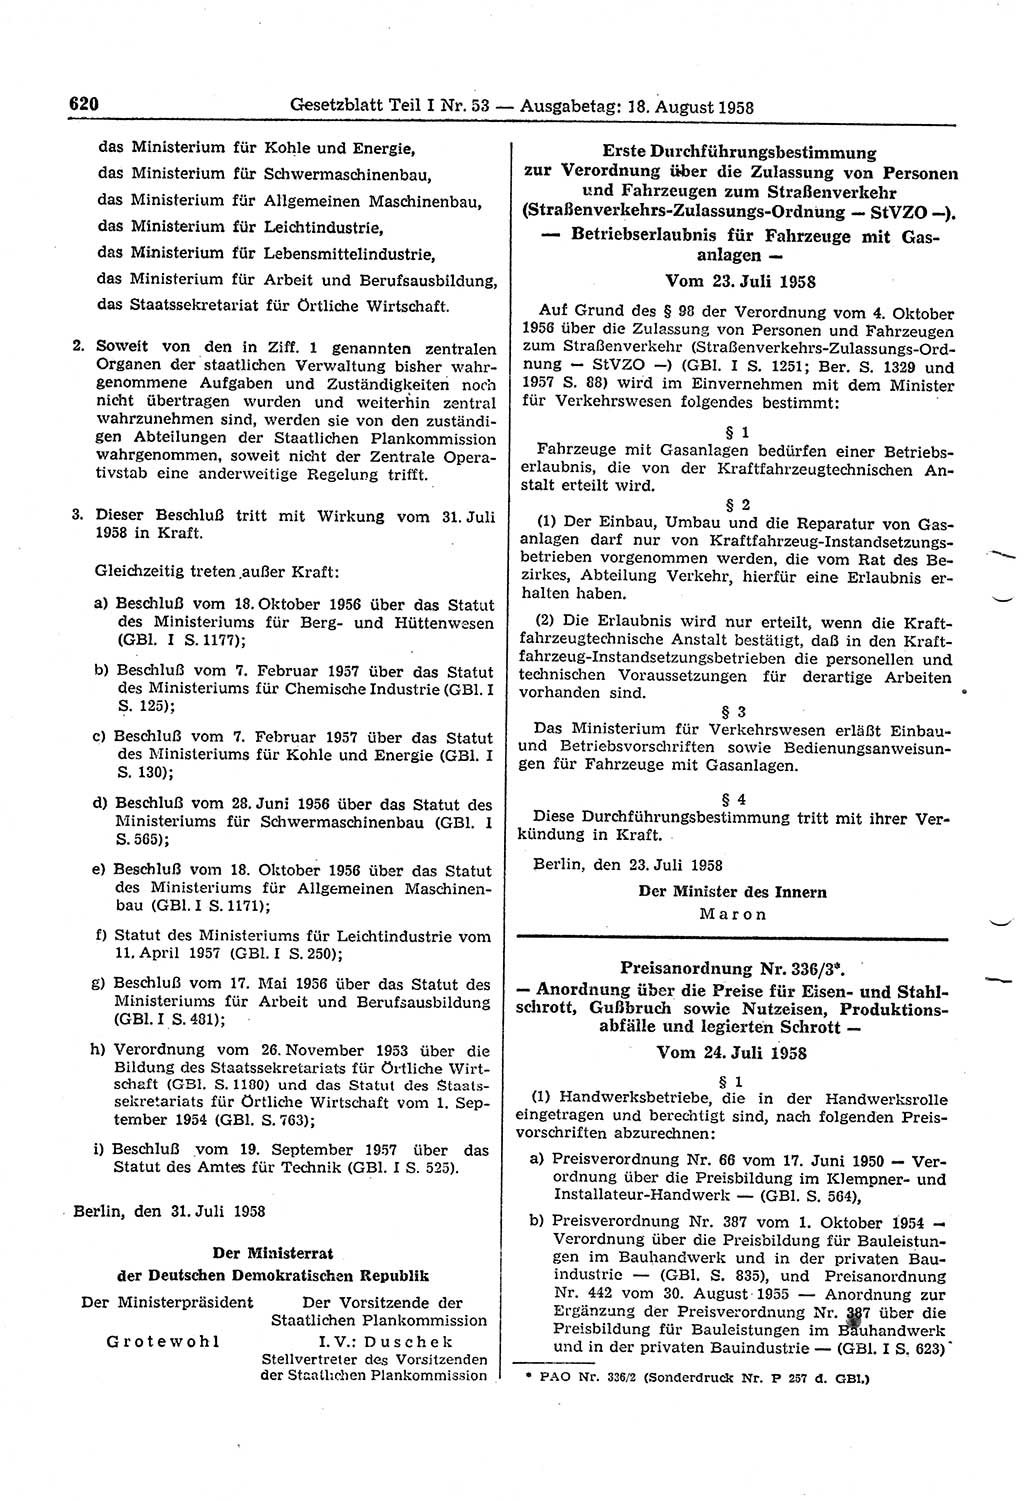 Gesetzblatt (GBl.) der Deutschen Demokratischen Republik (DDR) Teil Ⅰ 1958, Seite 620 (GBl. DDR Ⅰ 1958, S. 620)